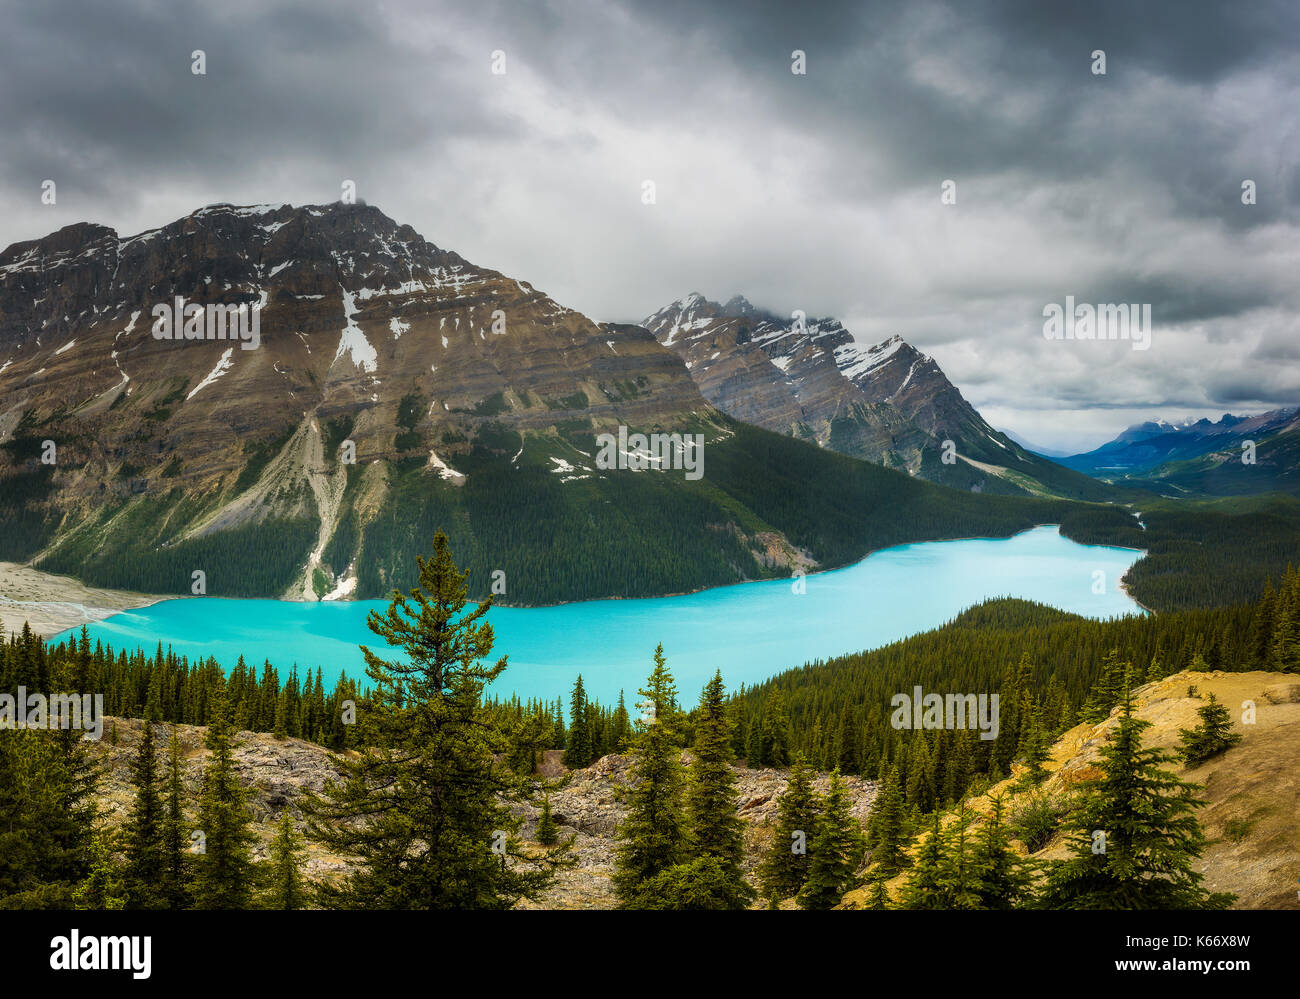 Panorama du lac Peyto. c'est un glacier lac dans le parc national de Banff dans les rocheuses canadiennes. Banque D'Images